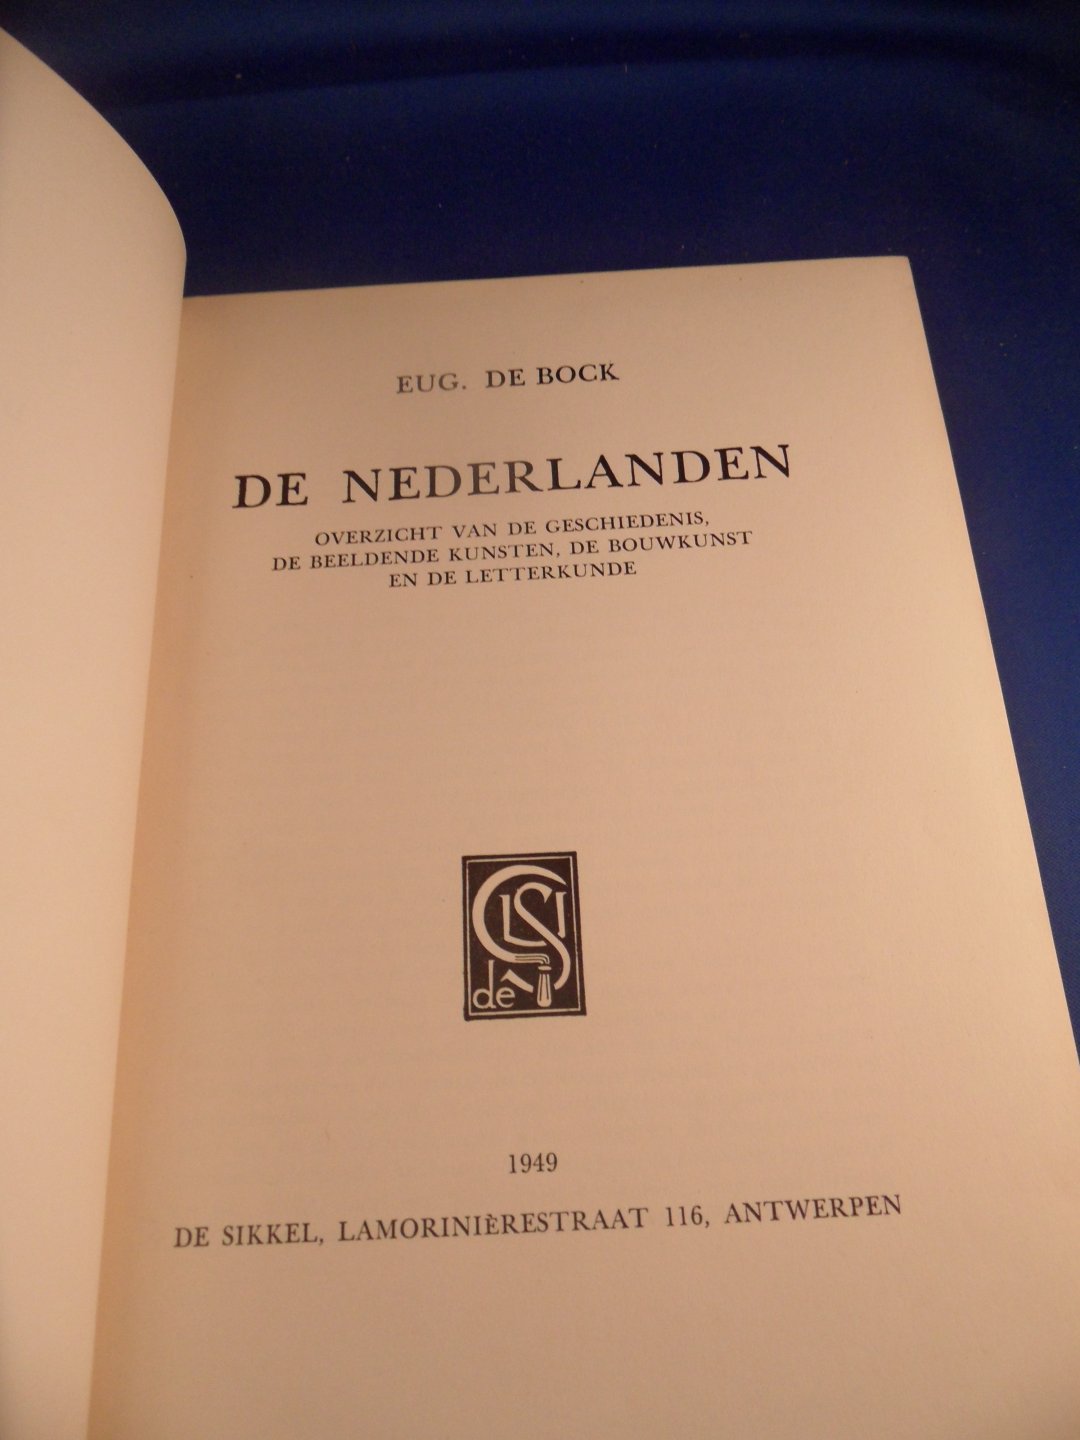 Bock, Eug. de - De Nederlanden. Overzicht van de geschiedenis, de beeldende kunsten, de bouwkunst en de letterkunde